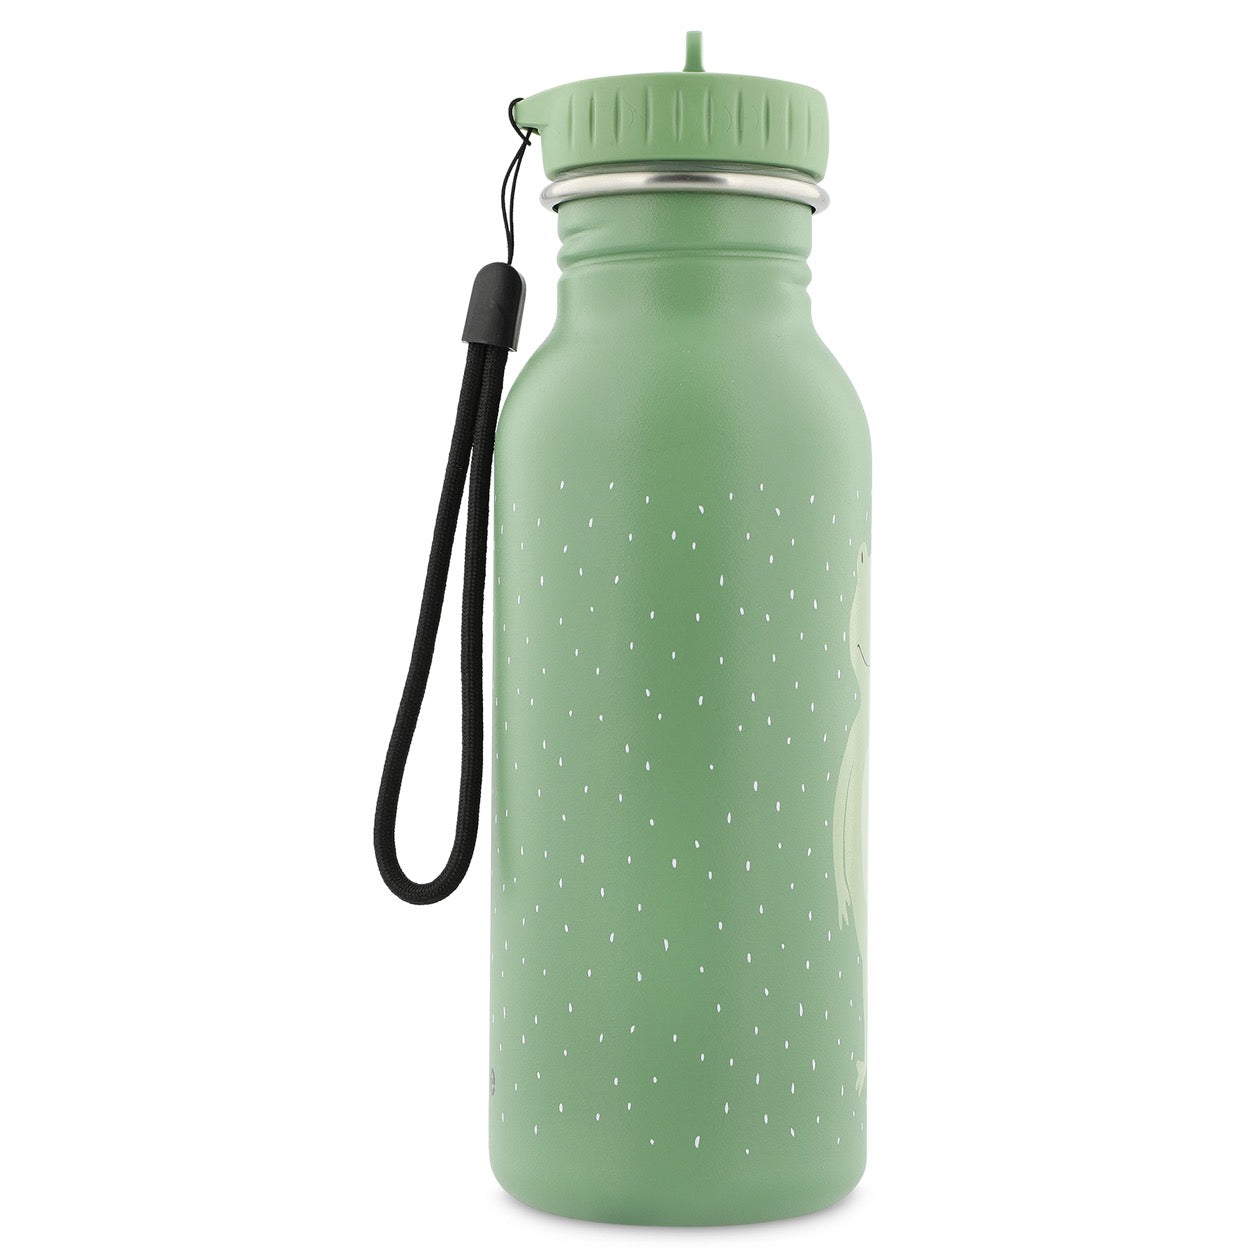 Reusable water bottle for kids- 500 ML- Mr Frog